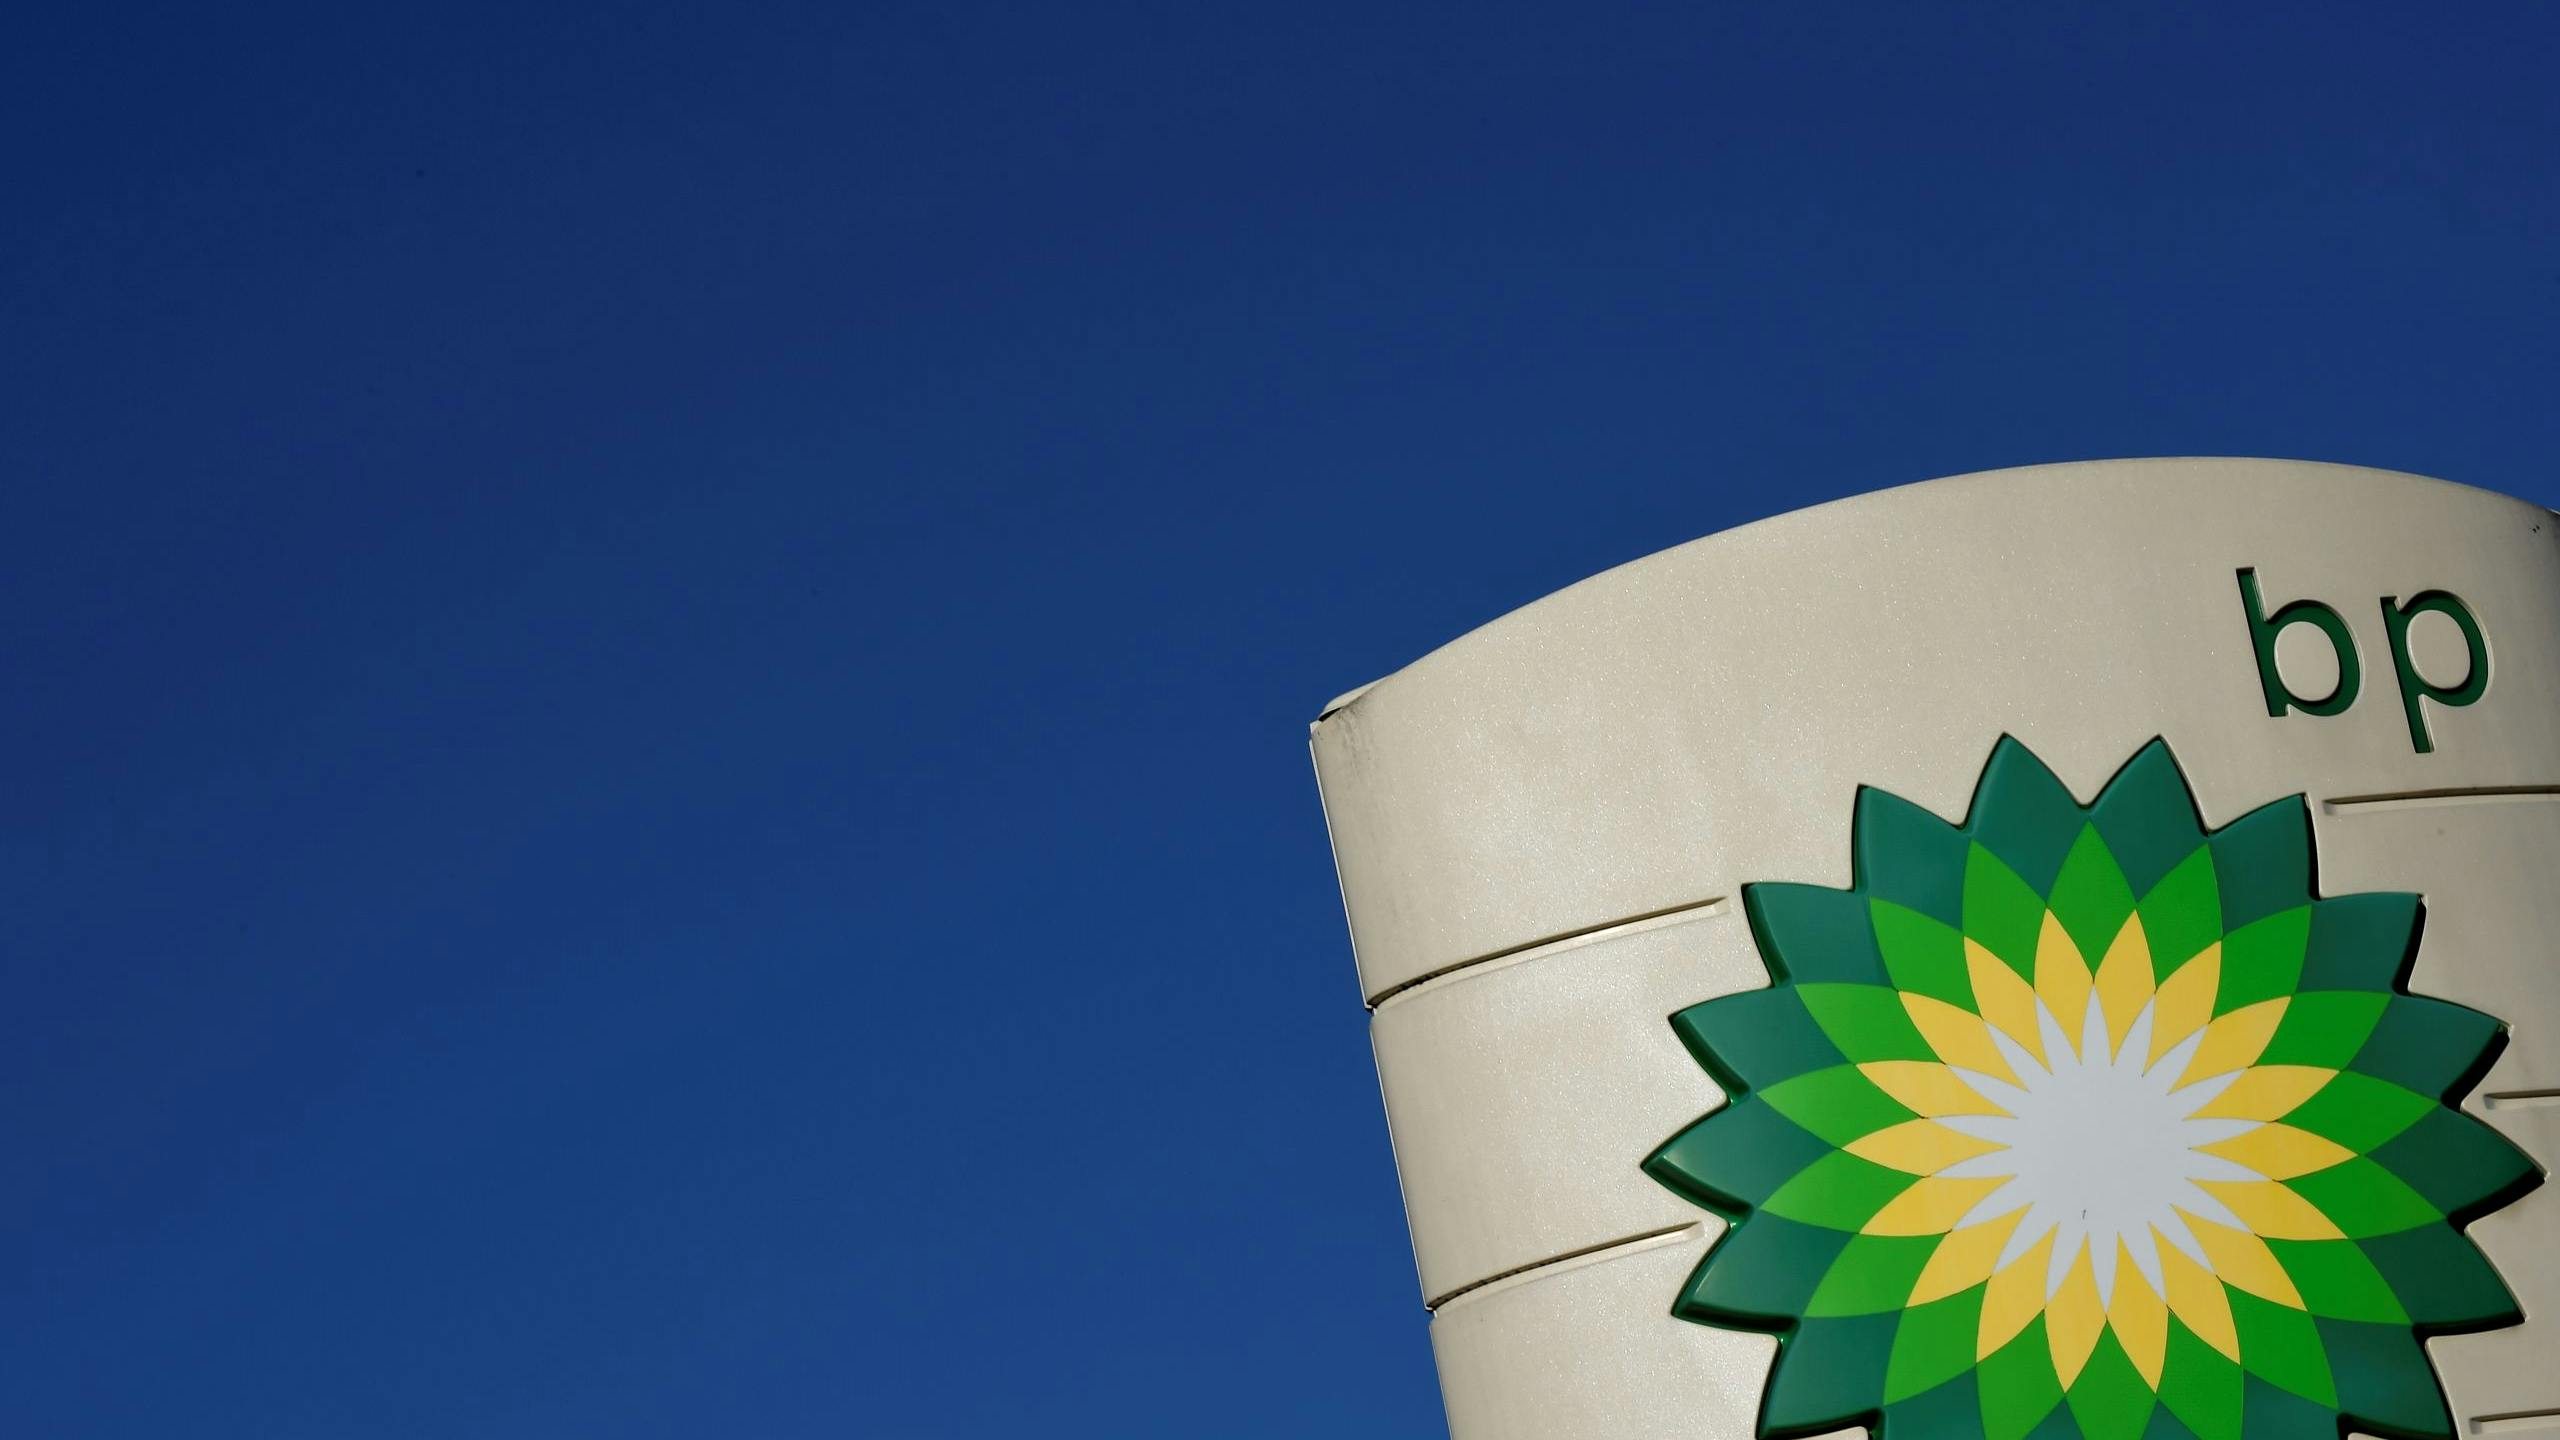 Oliegiganten als BP beseffen dat ze verantwoordelijkheid moeten nemen voor de uitstoot van hun producten en beginnen nu anders te investeren.